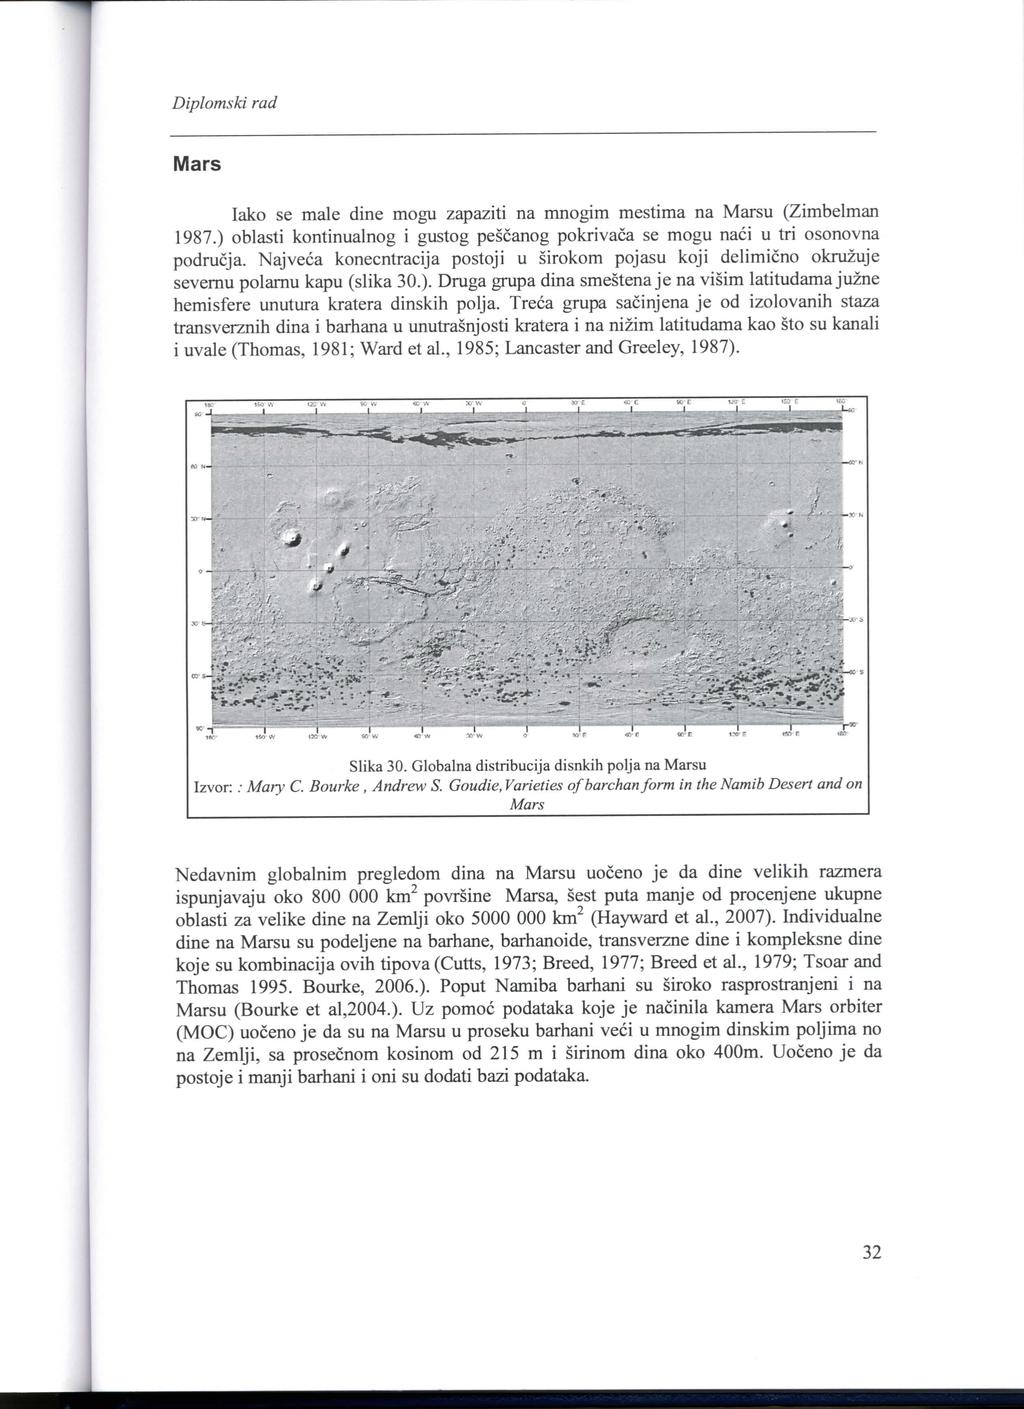 Mars lako se male dine mogu zapaziti na mnogim mestima na Marsu (Zimbelman 1987.) oblasti kontinualnog i gustog pescanog pokrivaca se mogu naci u tri osonovna podrucja.